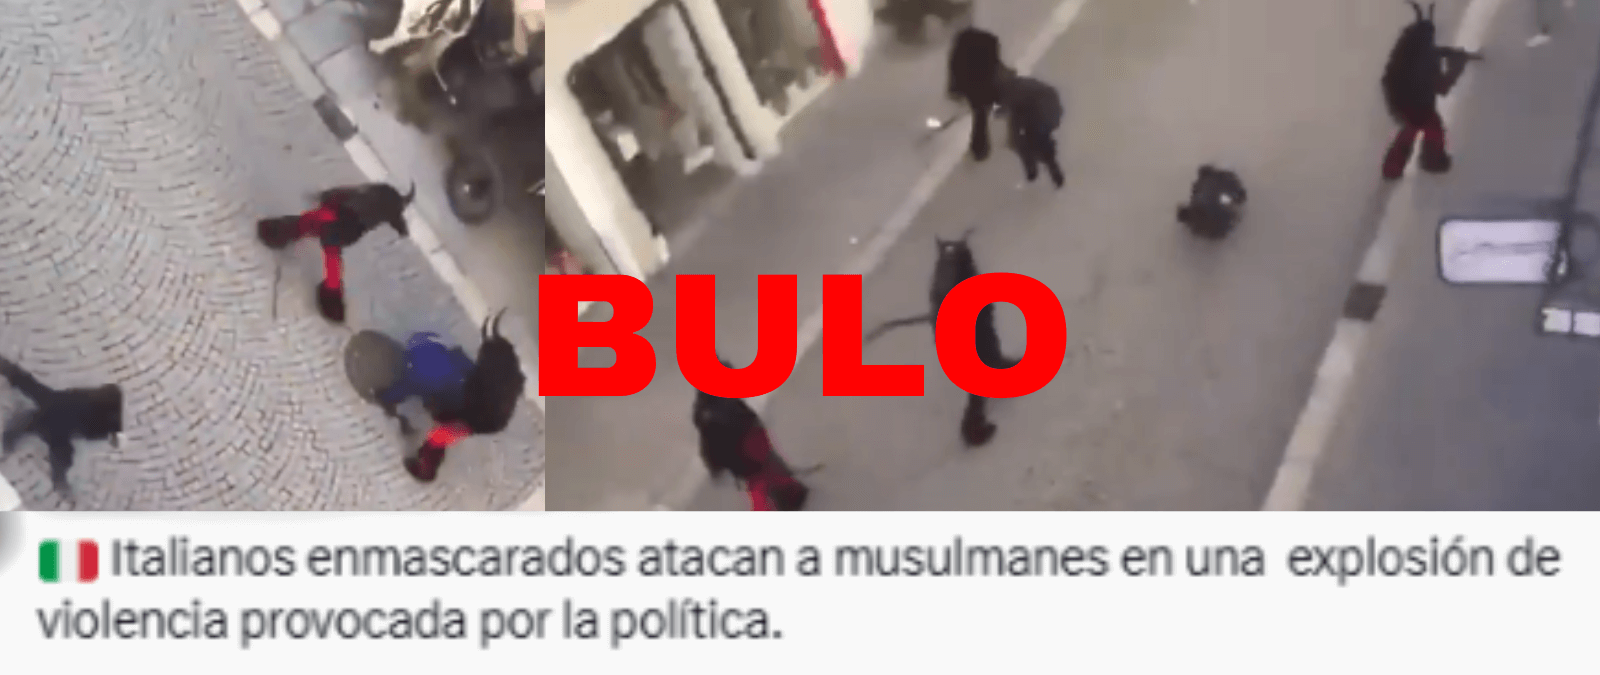 No, este vídeo no es de italianos golpeando a musulmanes por la “política” ni es actual: es parte de un festival y se grabó en 2019